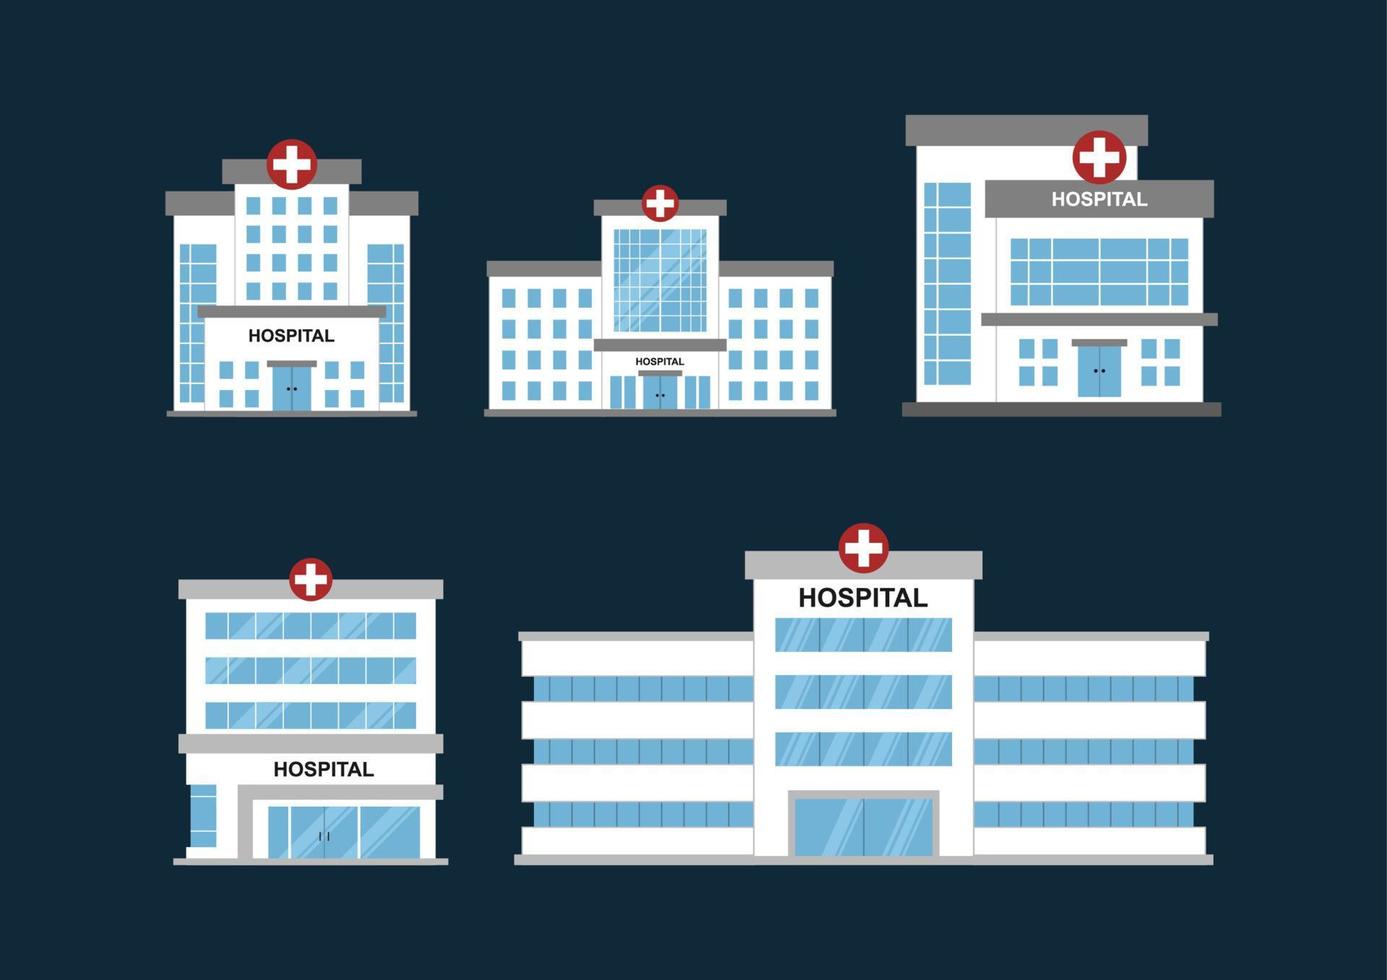 définir la conception de vecteur plat des bâtiments hospitaliers. vecteur hospitalier adapté à l'infographie, aux ressources graphiques, aux ressources de jeu, au concept médical, etc.